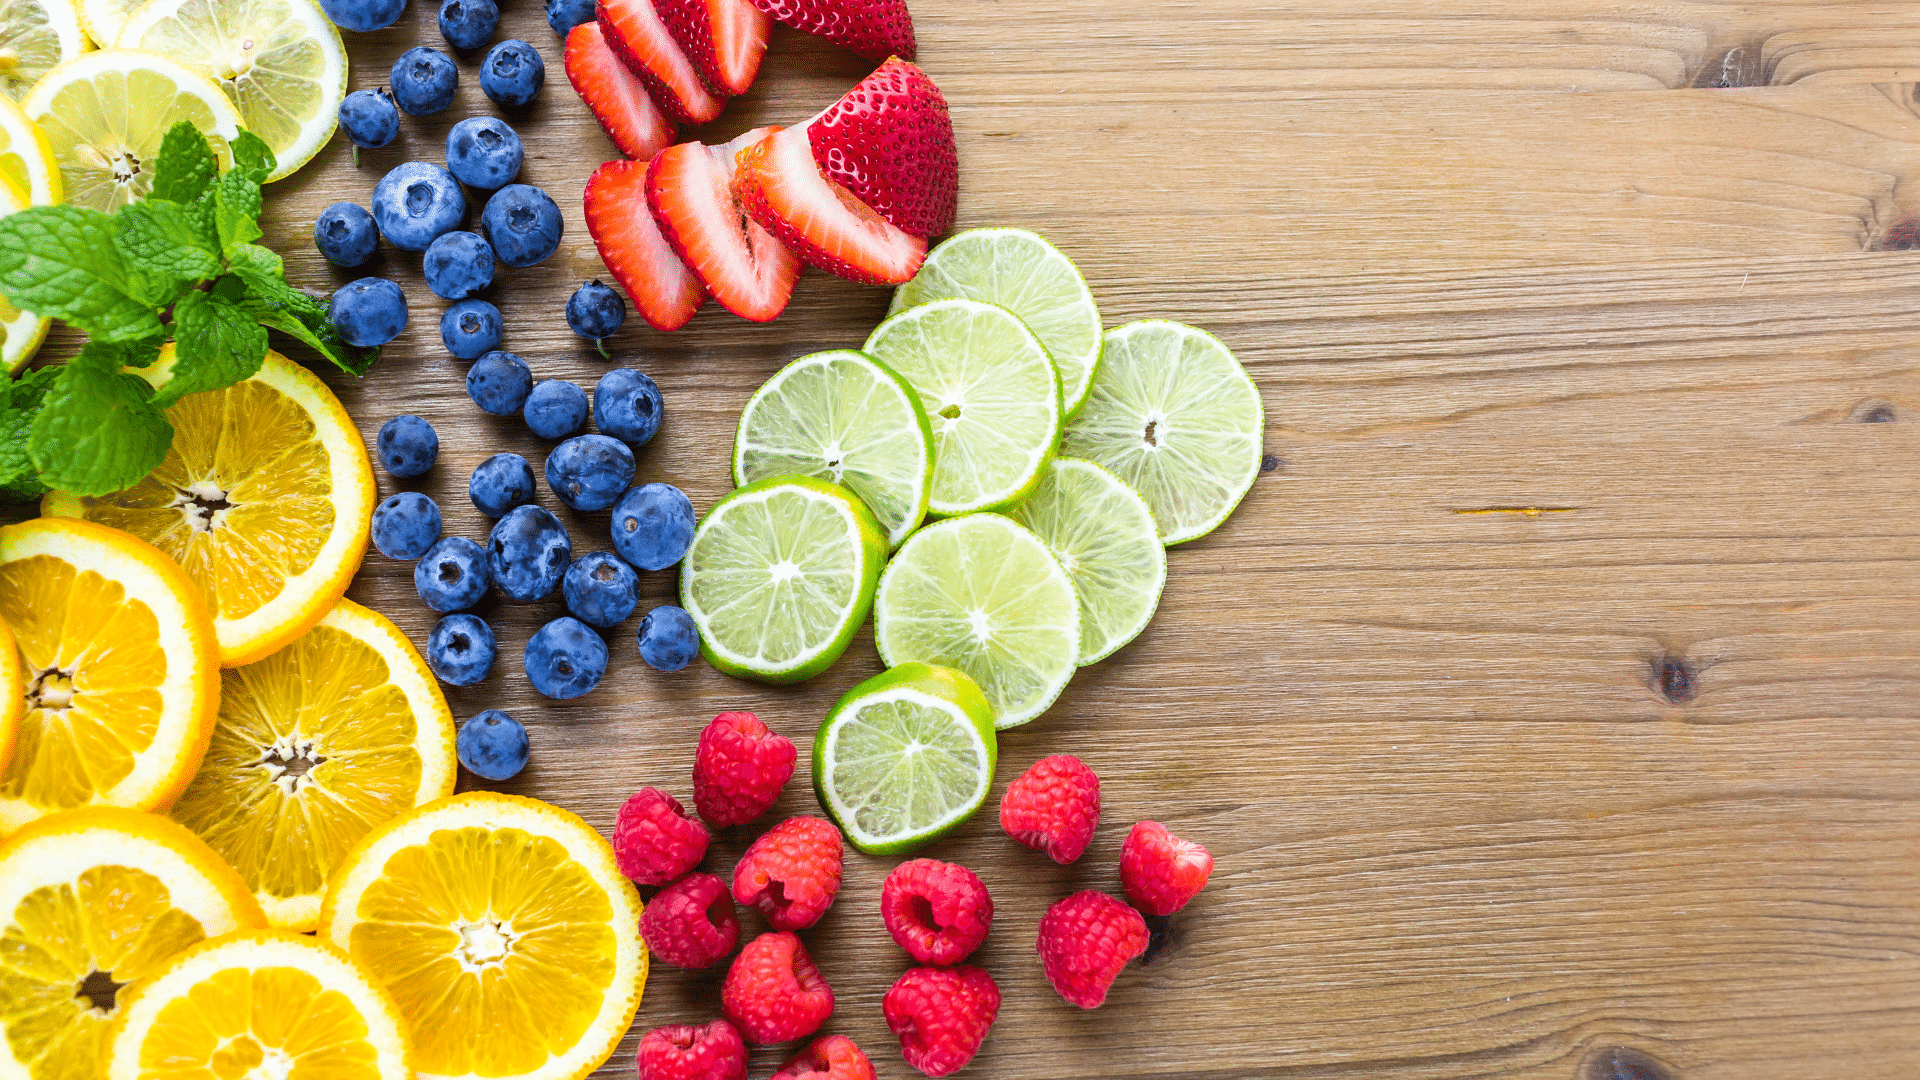 כל מה שאתה צריך לדעת על אילו ויטמינים יש בפירות וירקות כחולים